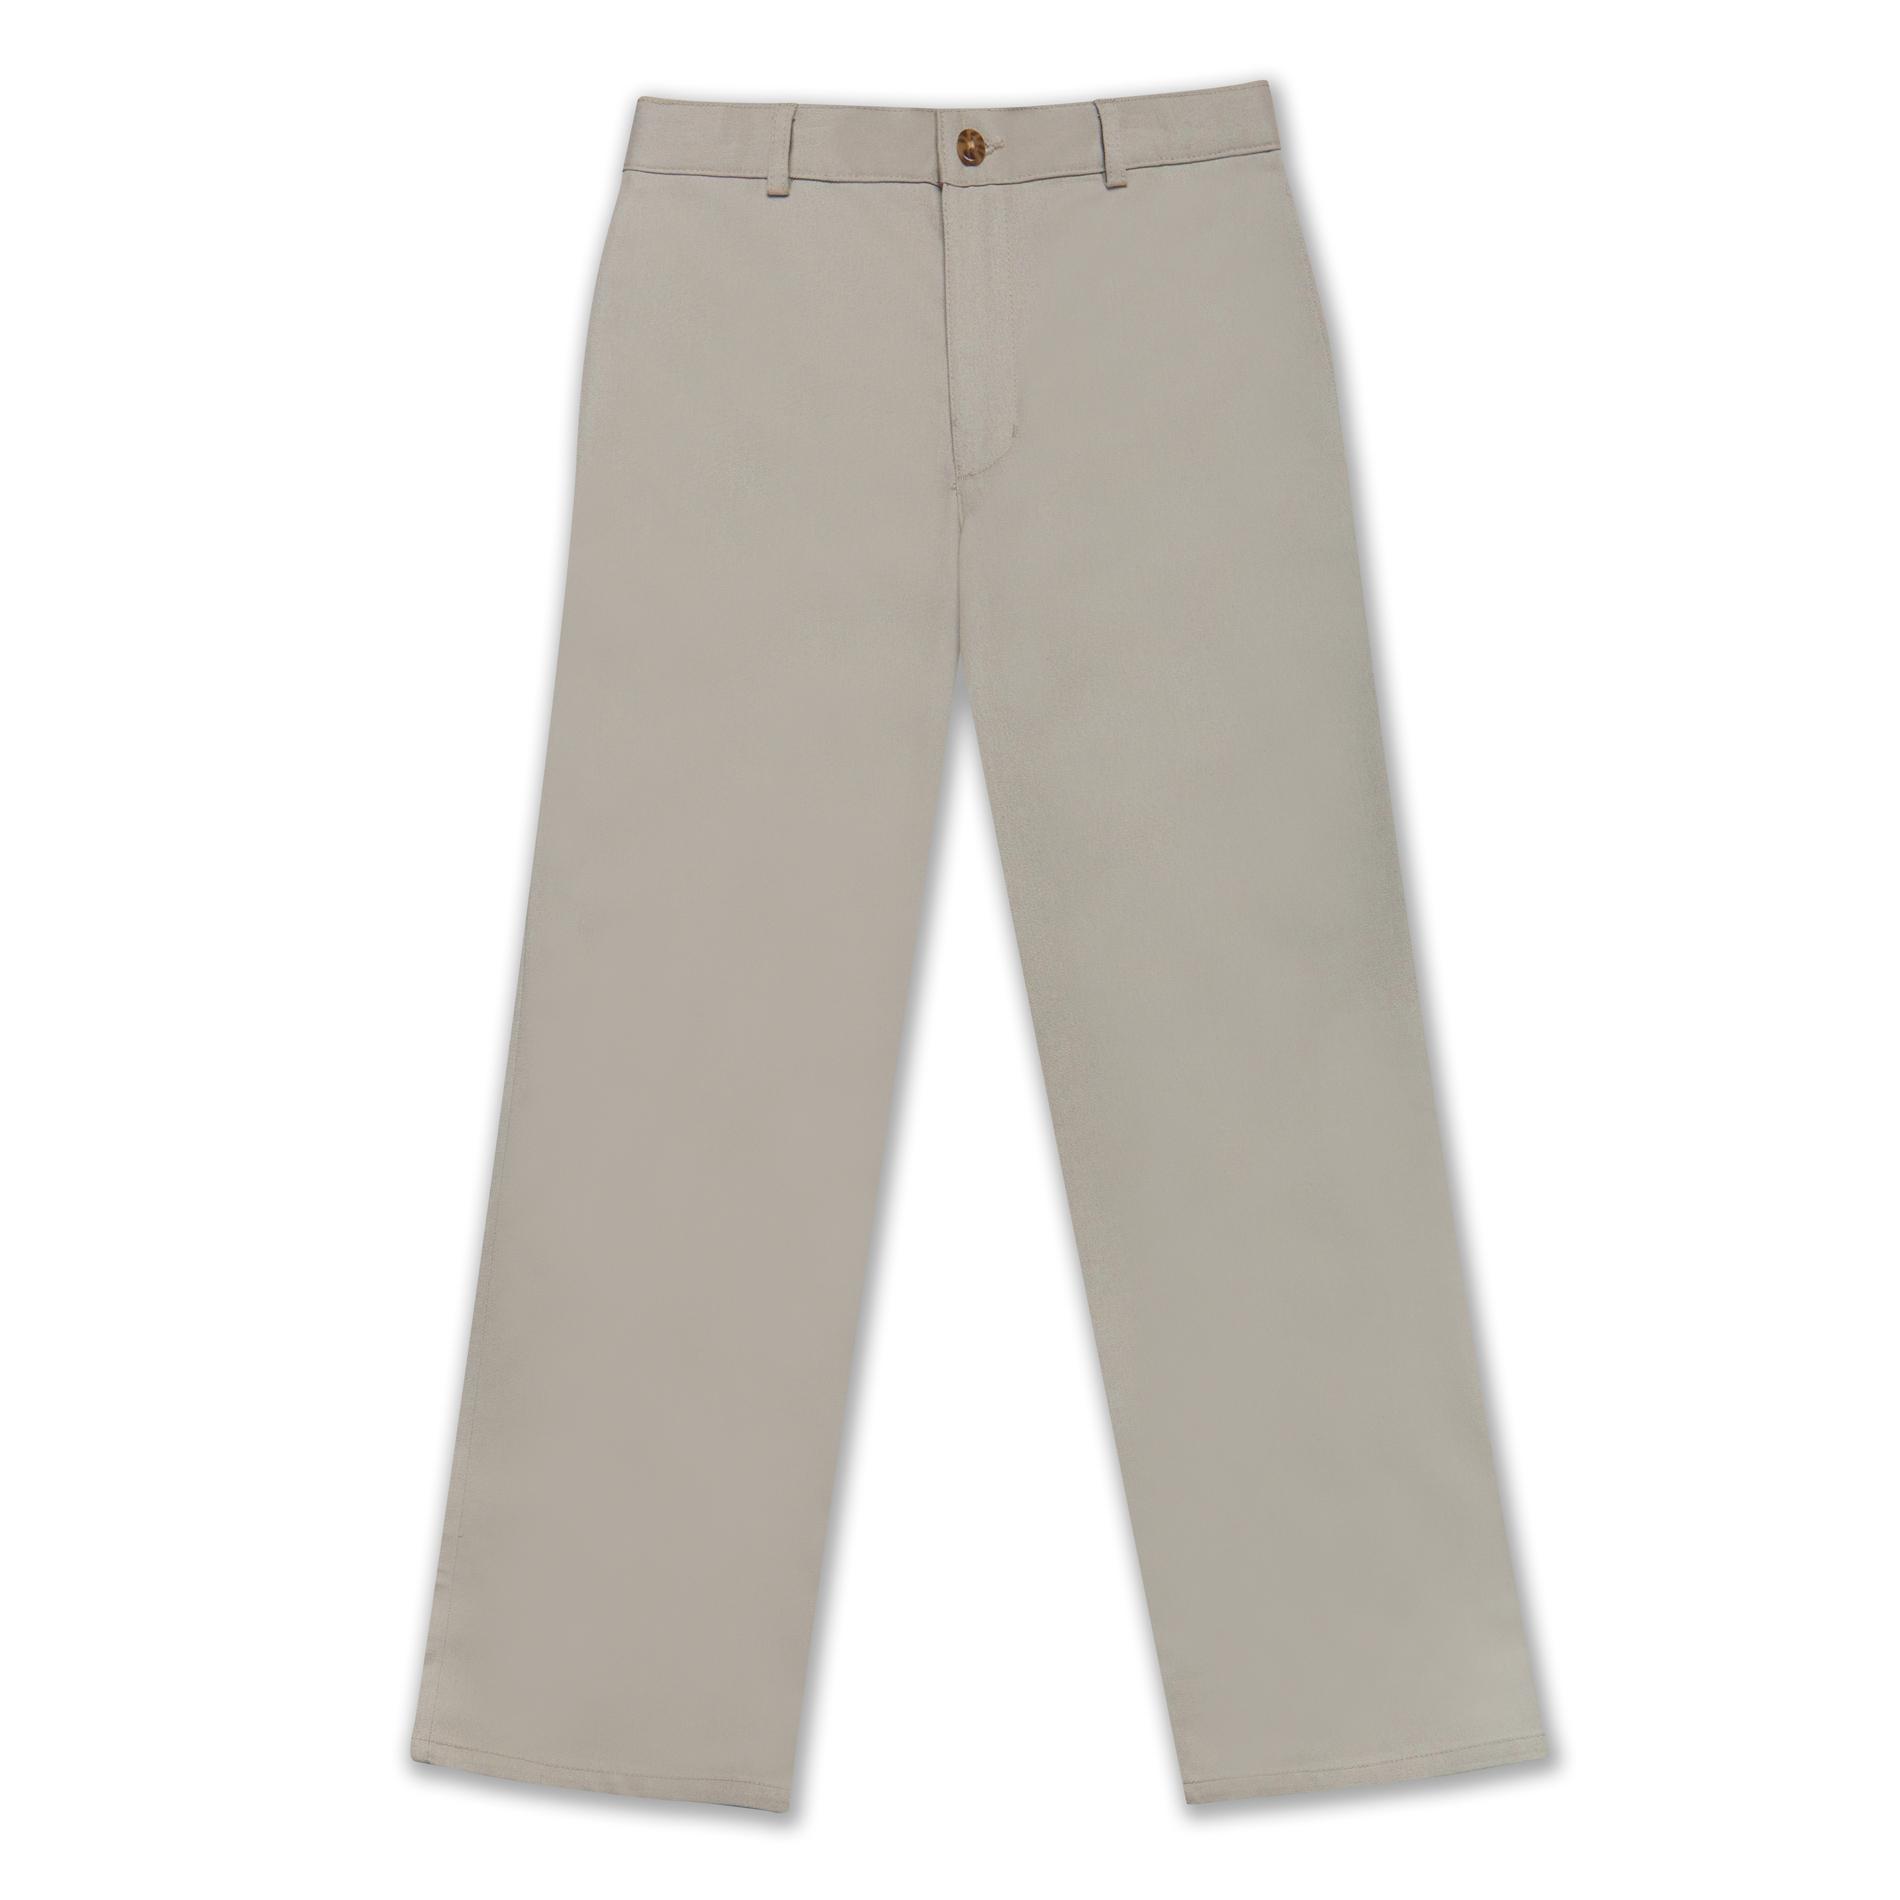 Dockers Boy's Uniform Khaki Pants - Khaki